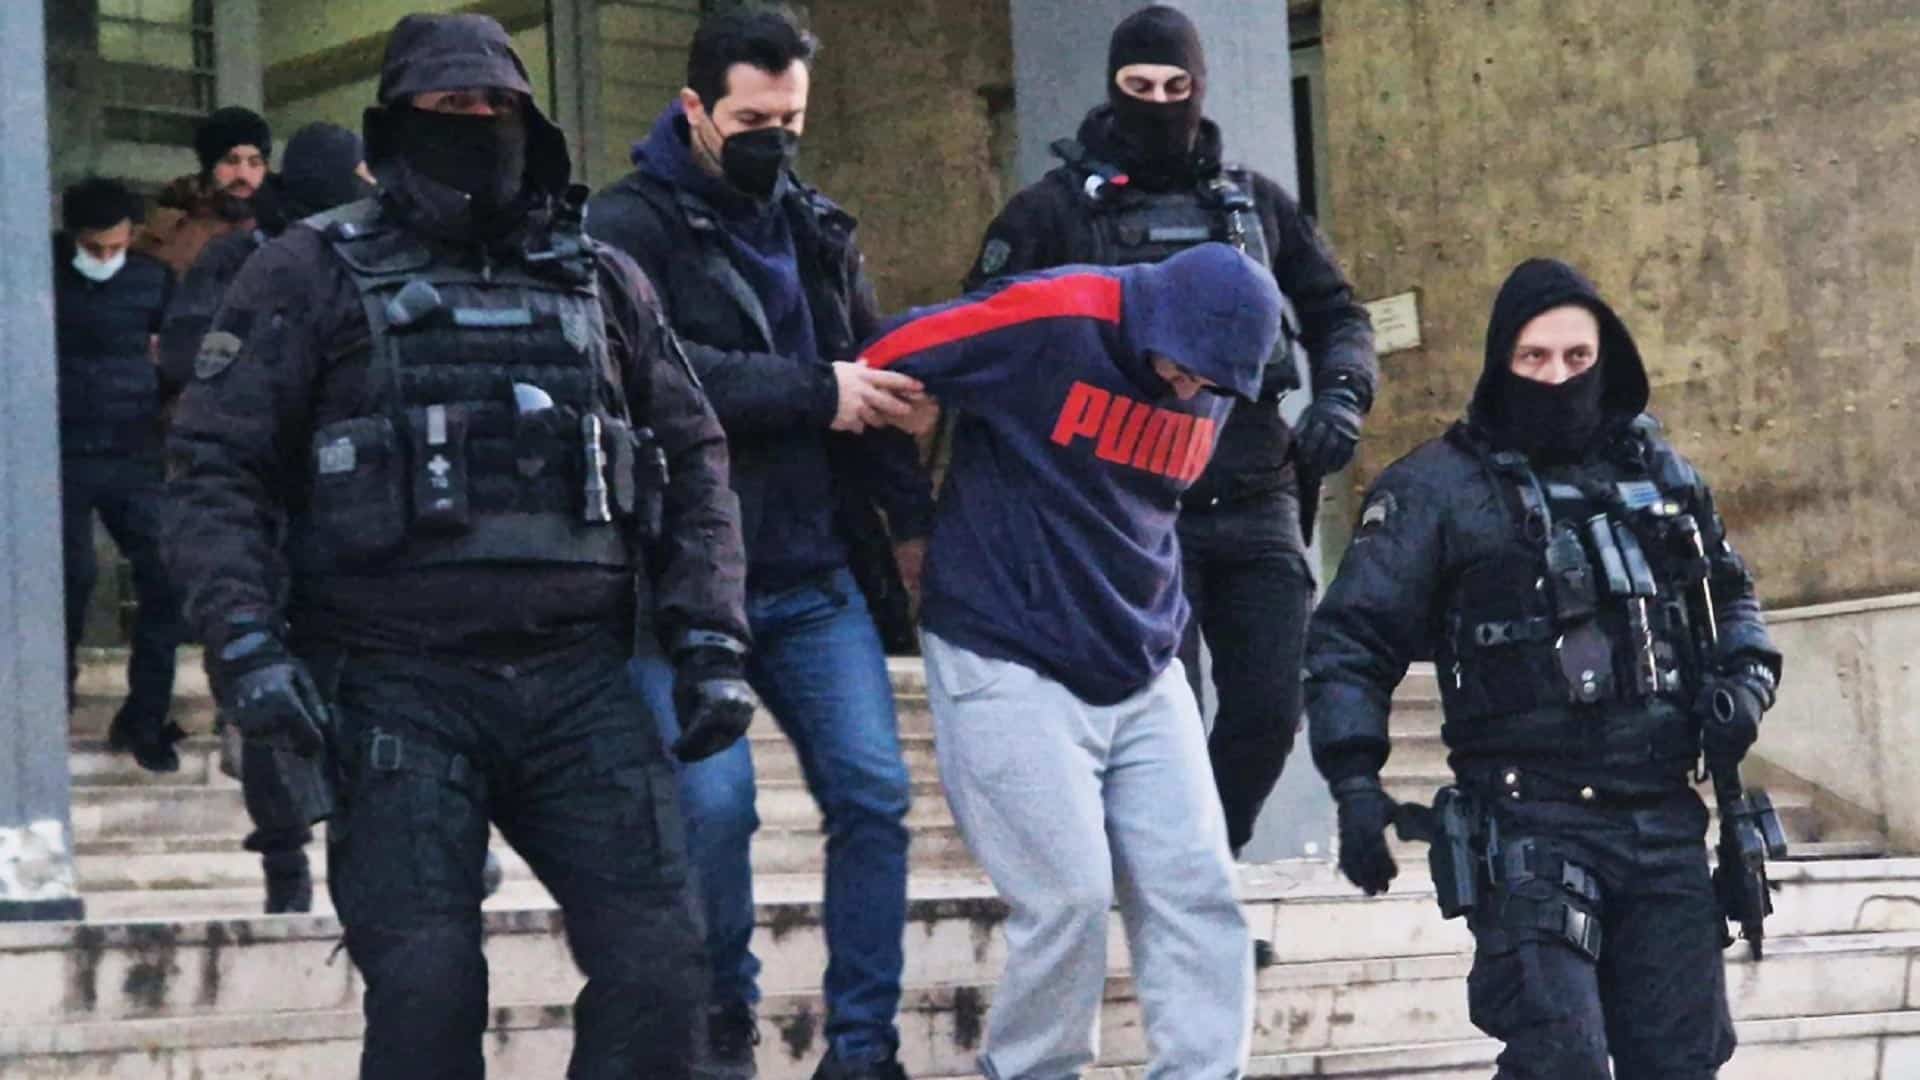 Θεσσαλονίκη - Δολοφονία 41χρονης: Στη φυλακή ο σύντροφός της και ο συνεργός του